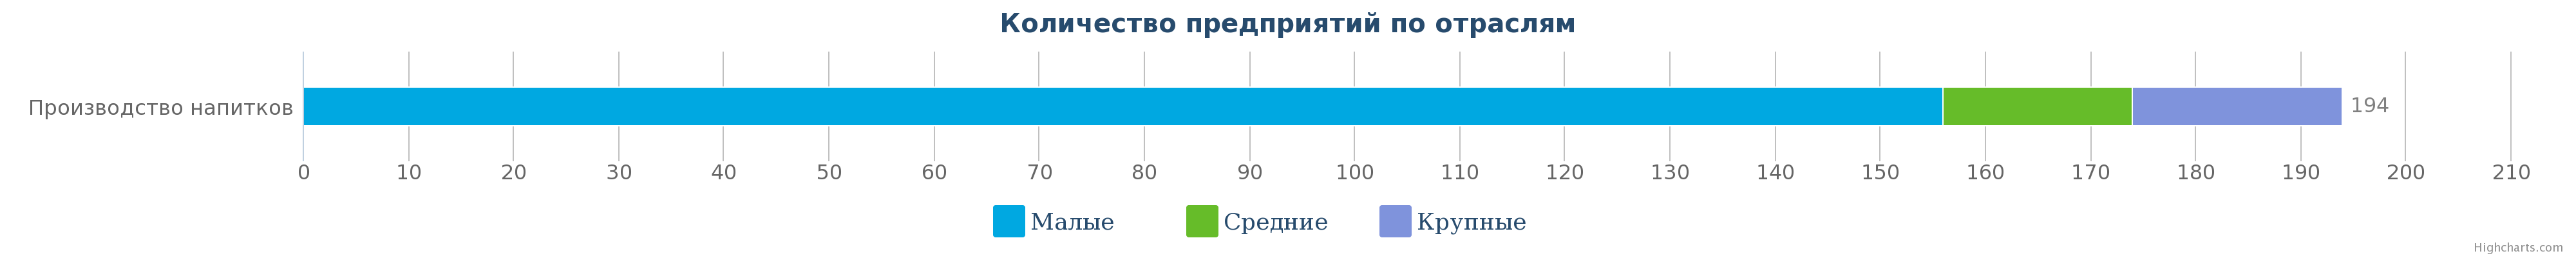 Количество компаний в сфере производства напитков в Республике Казахстан по видам на 19.04.2017